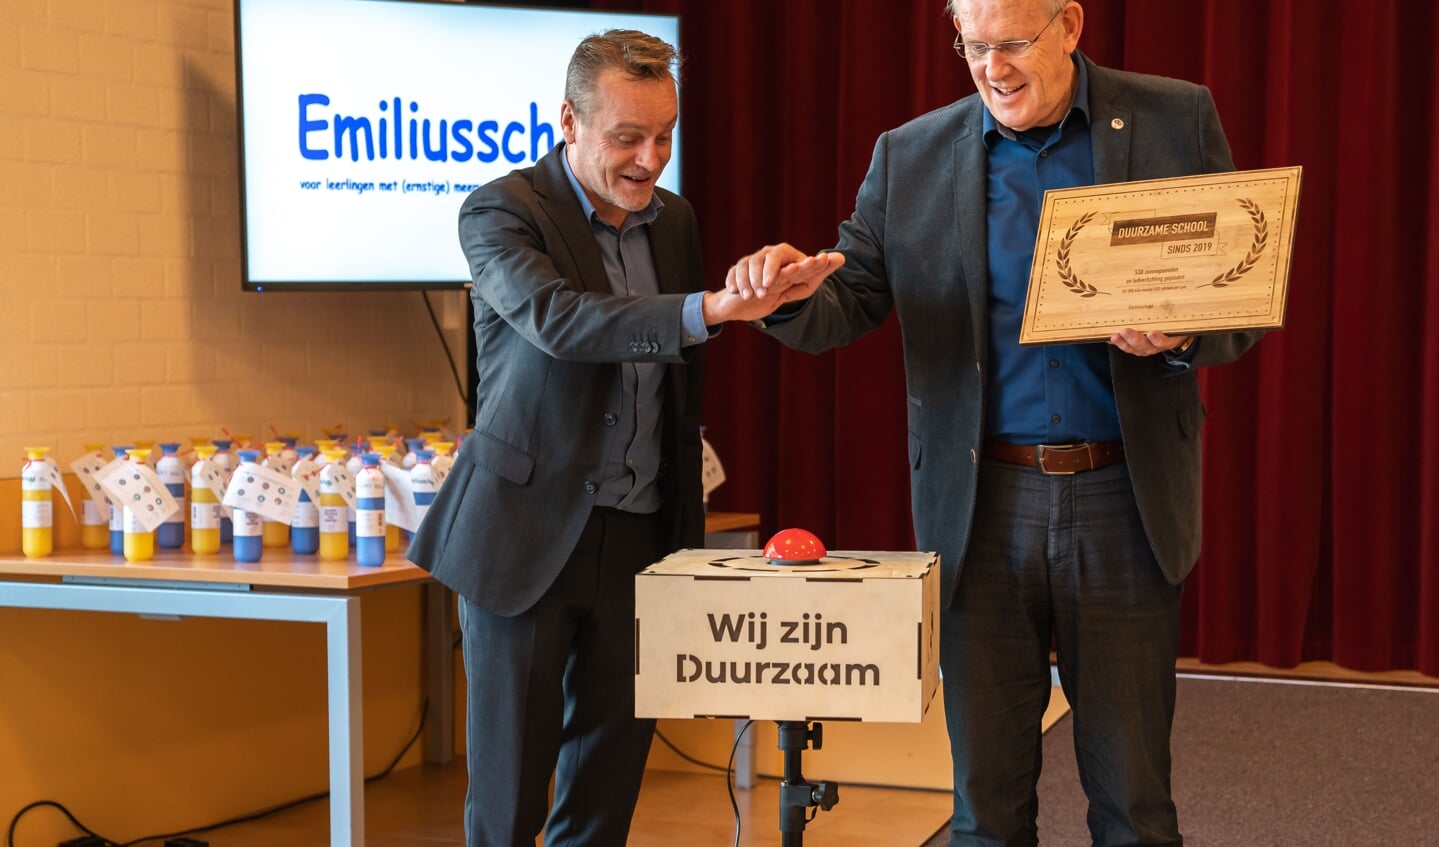 Wethouder Liempd (Links) bezoekt de Emiliusschool die nu ook duurzaam is